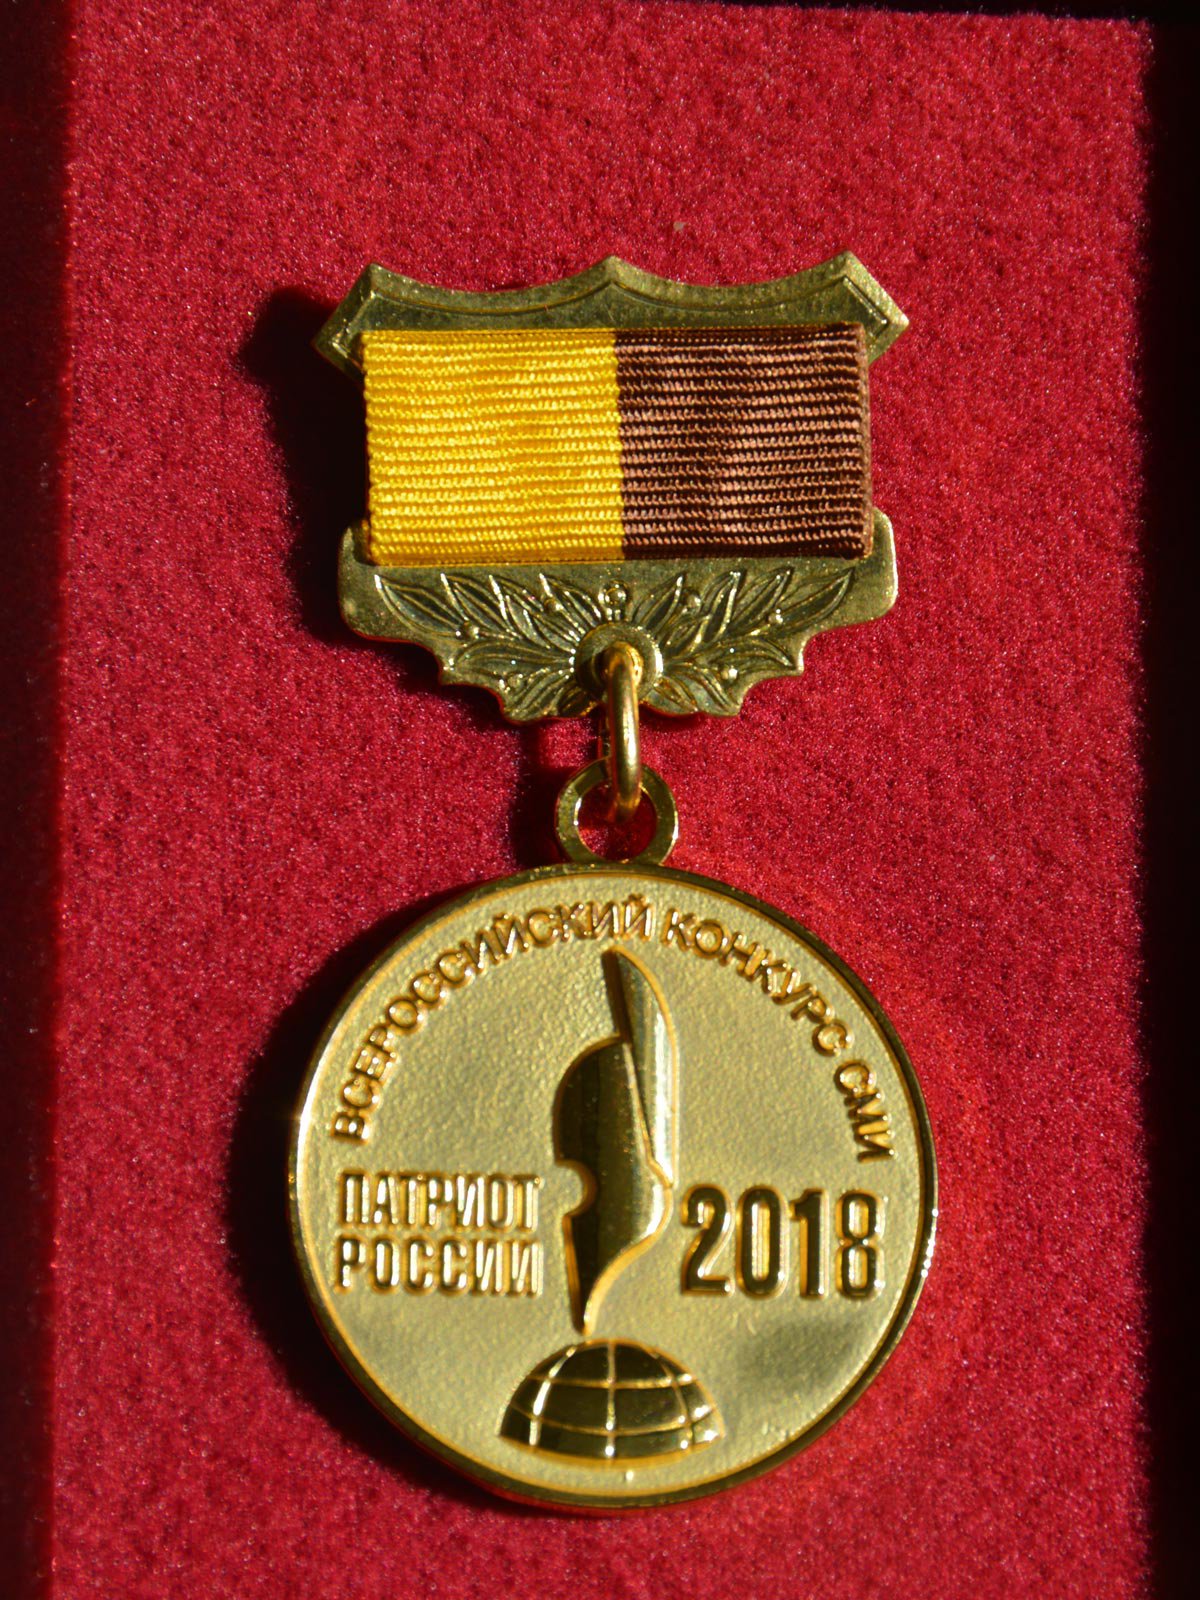 Награда Всероссийского конкурса СМИ «Патриот России- 2018» (Казань, 2018 г.)